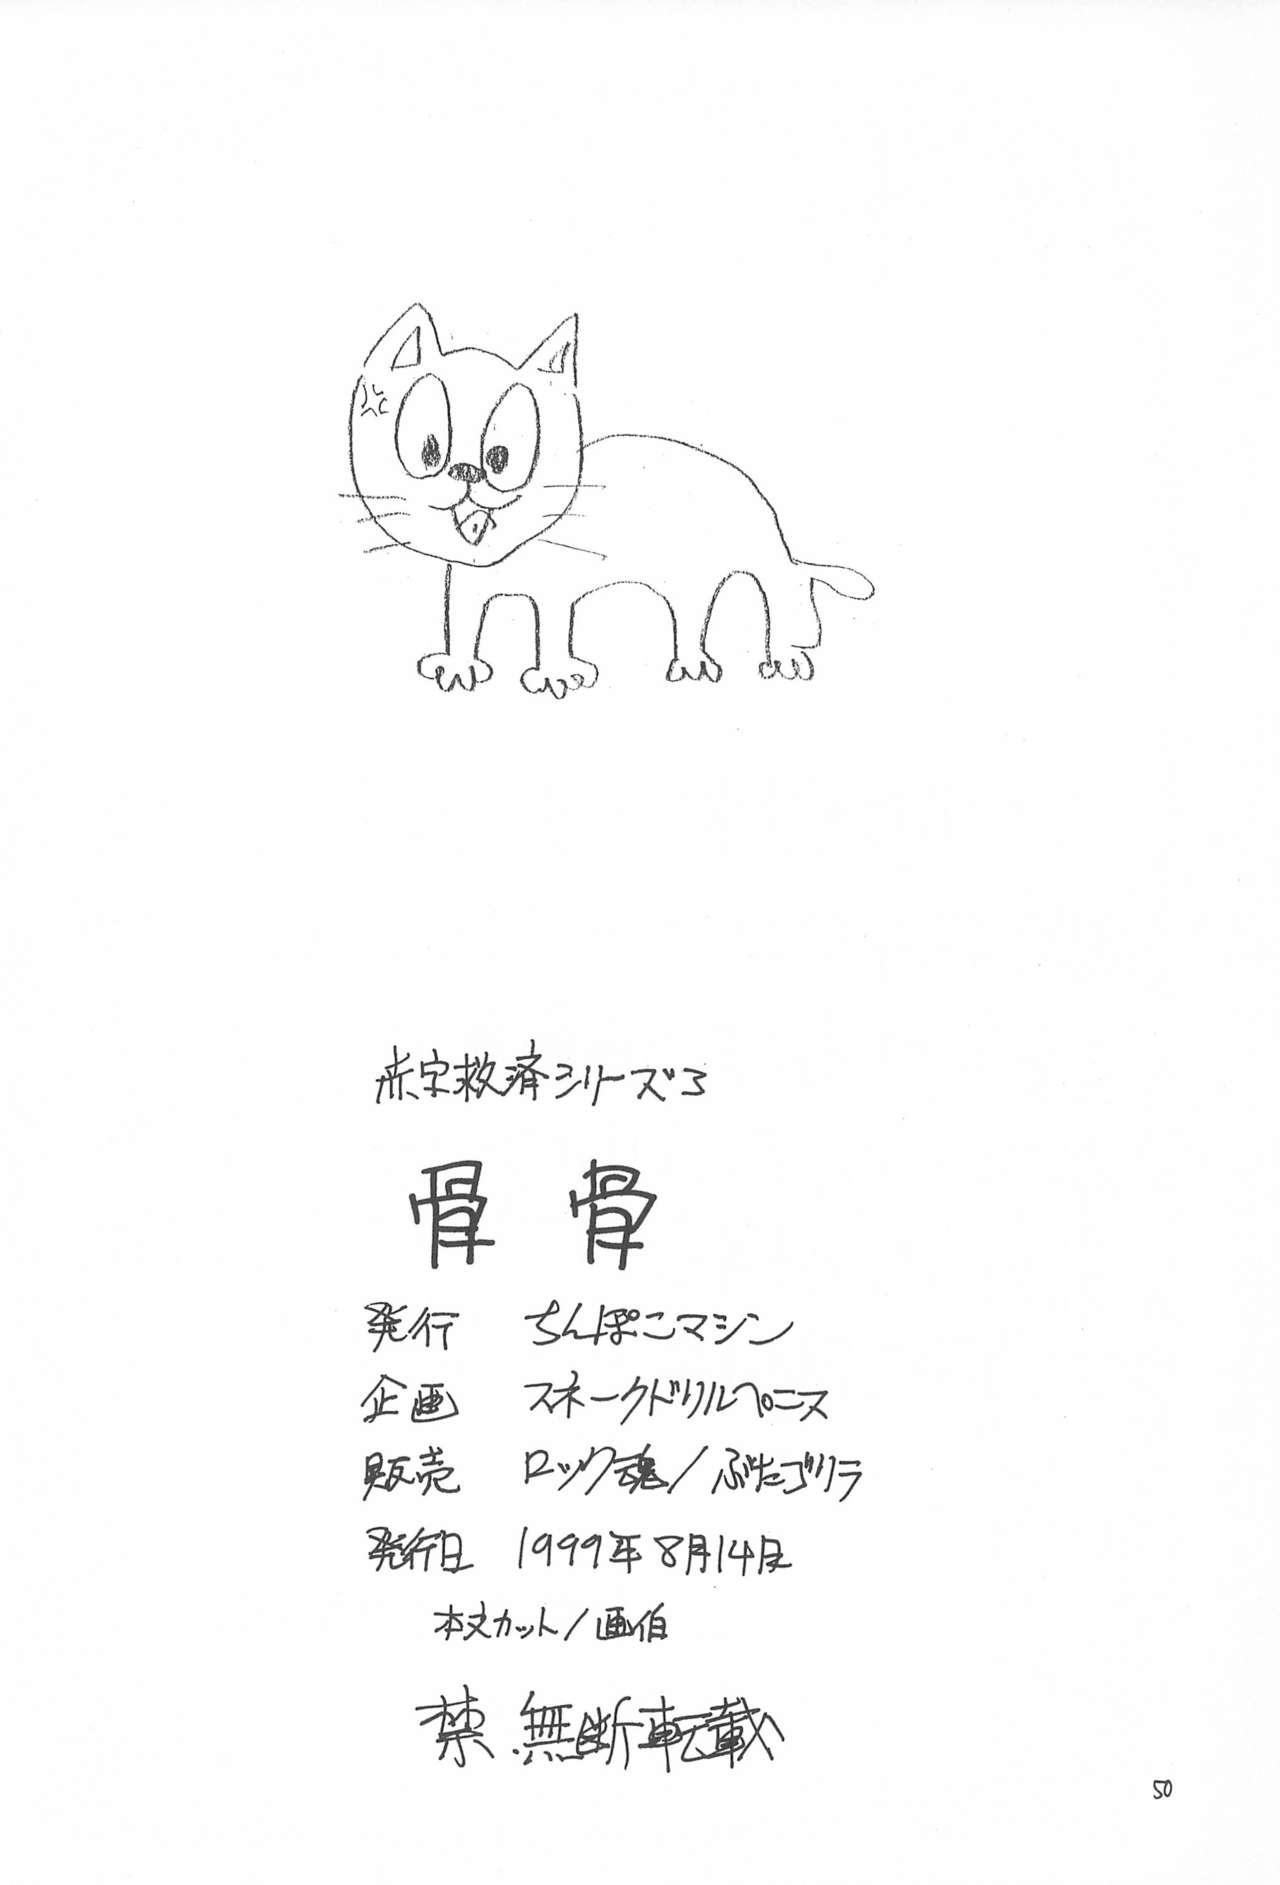 Leaked Hone 2 - Cardcaptor sakura Ojamajo doremi Revolutionary girl utena Gay Porn - Page 50